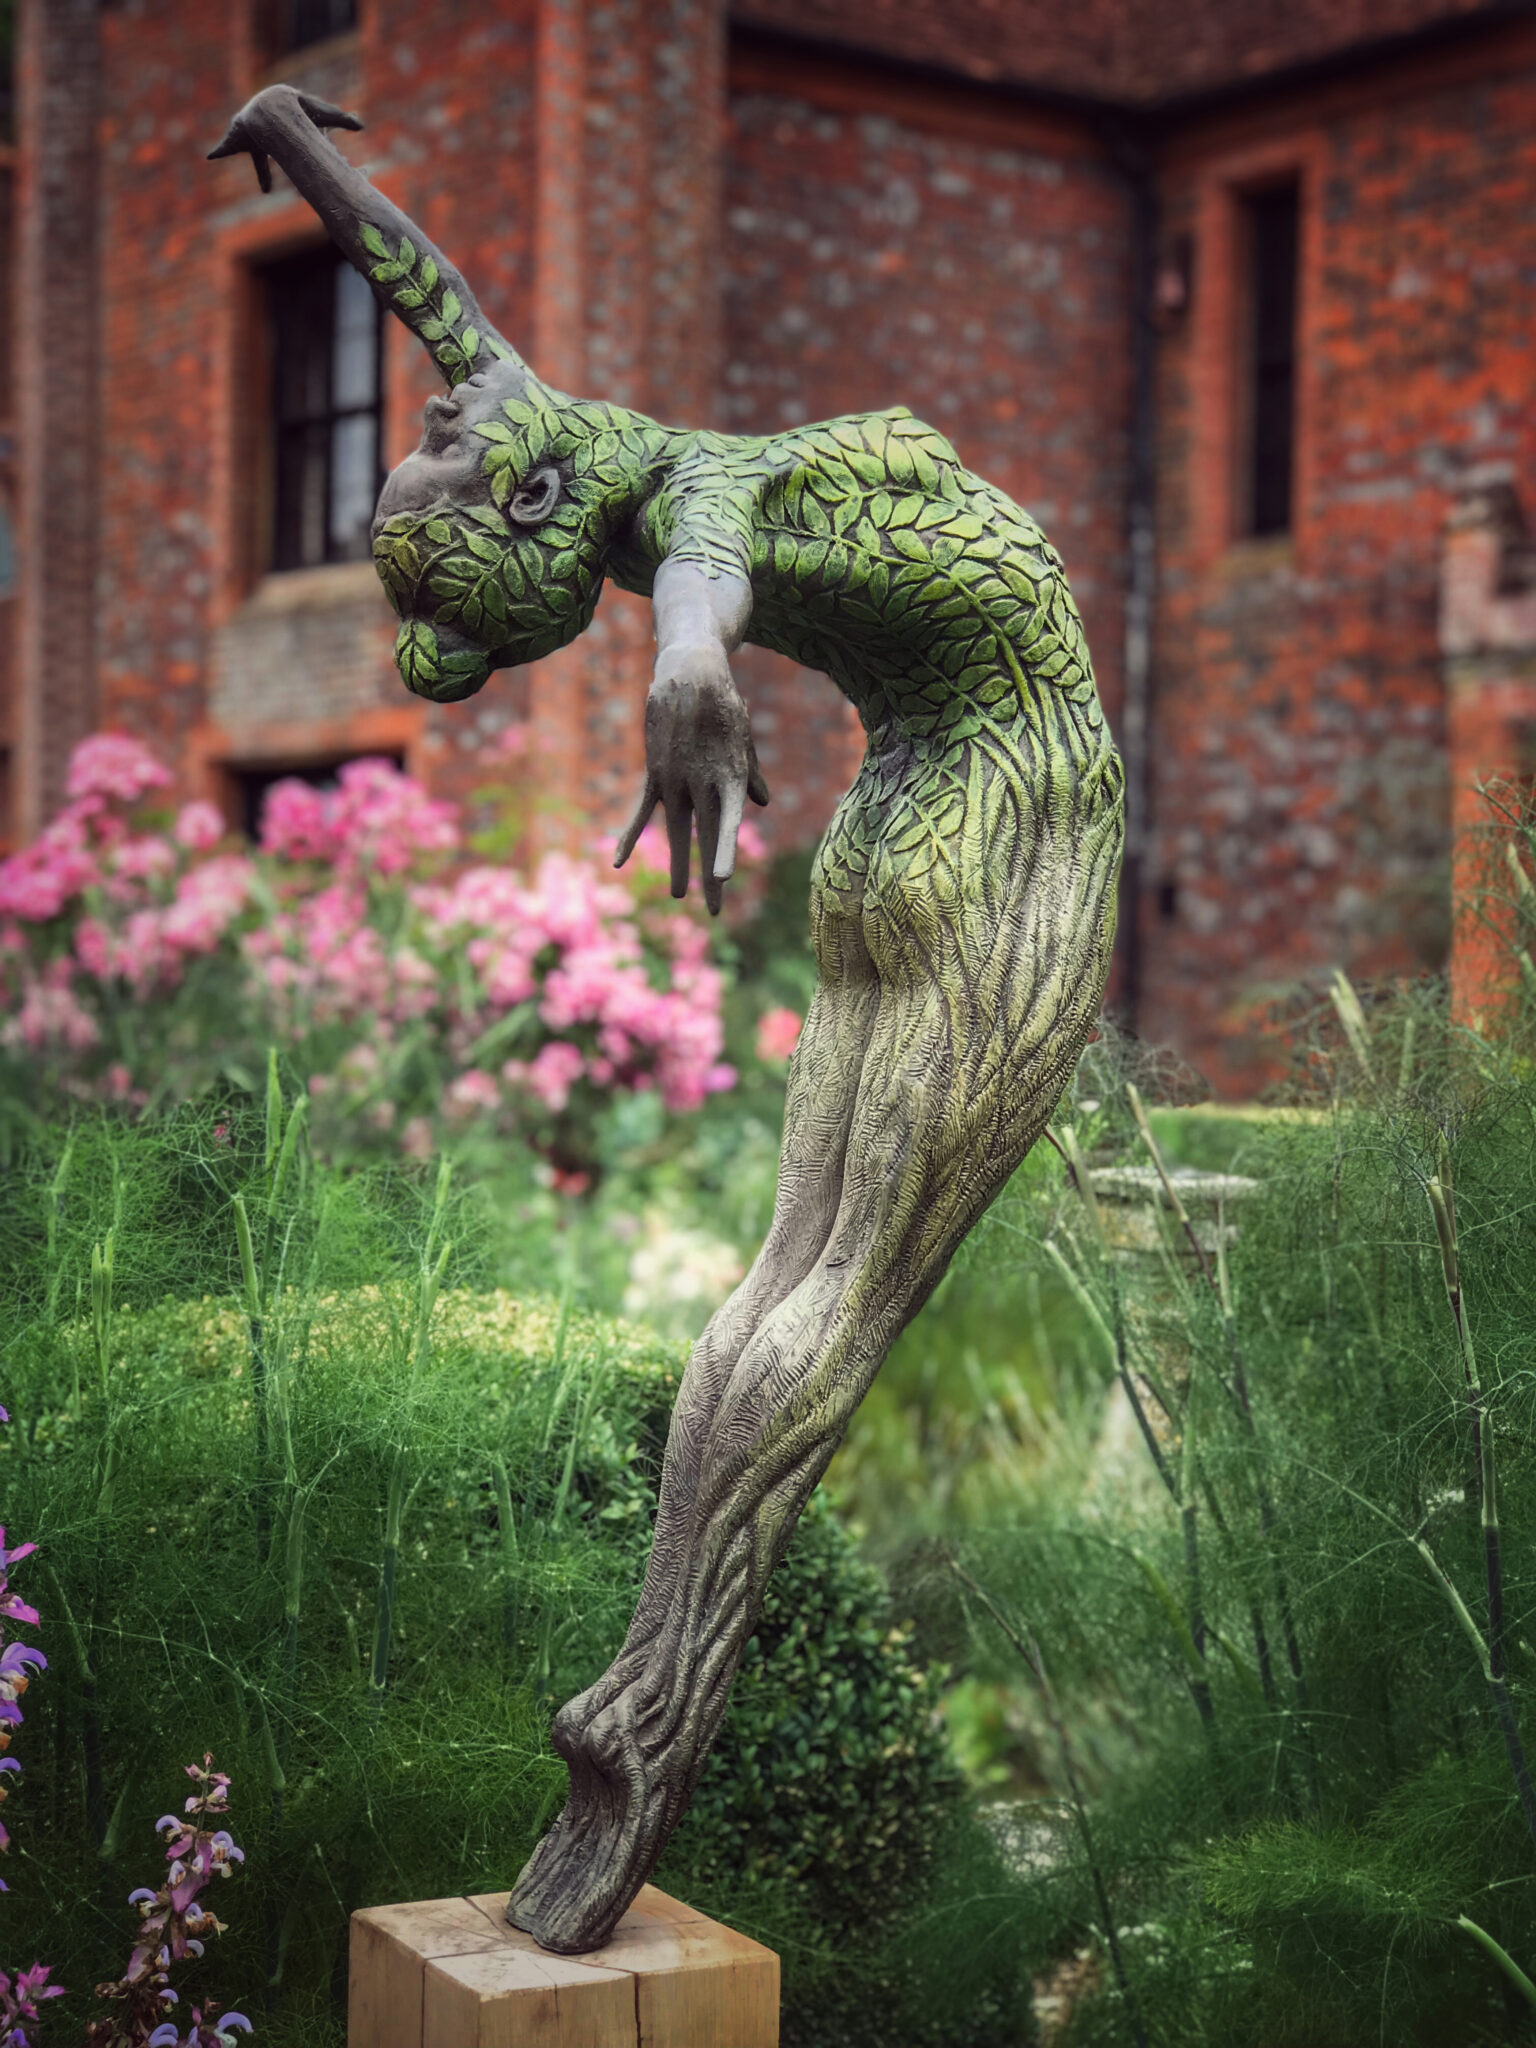 Dansfigure en natuurlike elemente verenig in Jonathan Hateley se elegante bronsbeelde